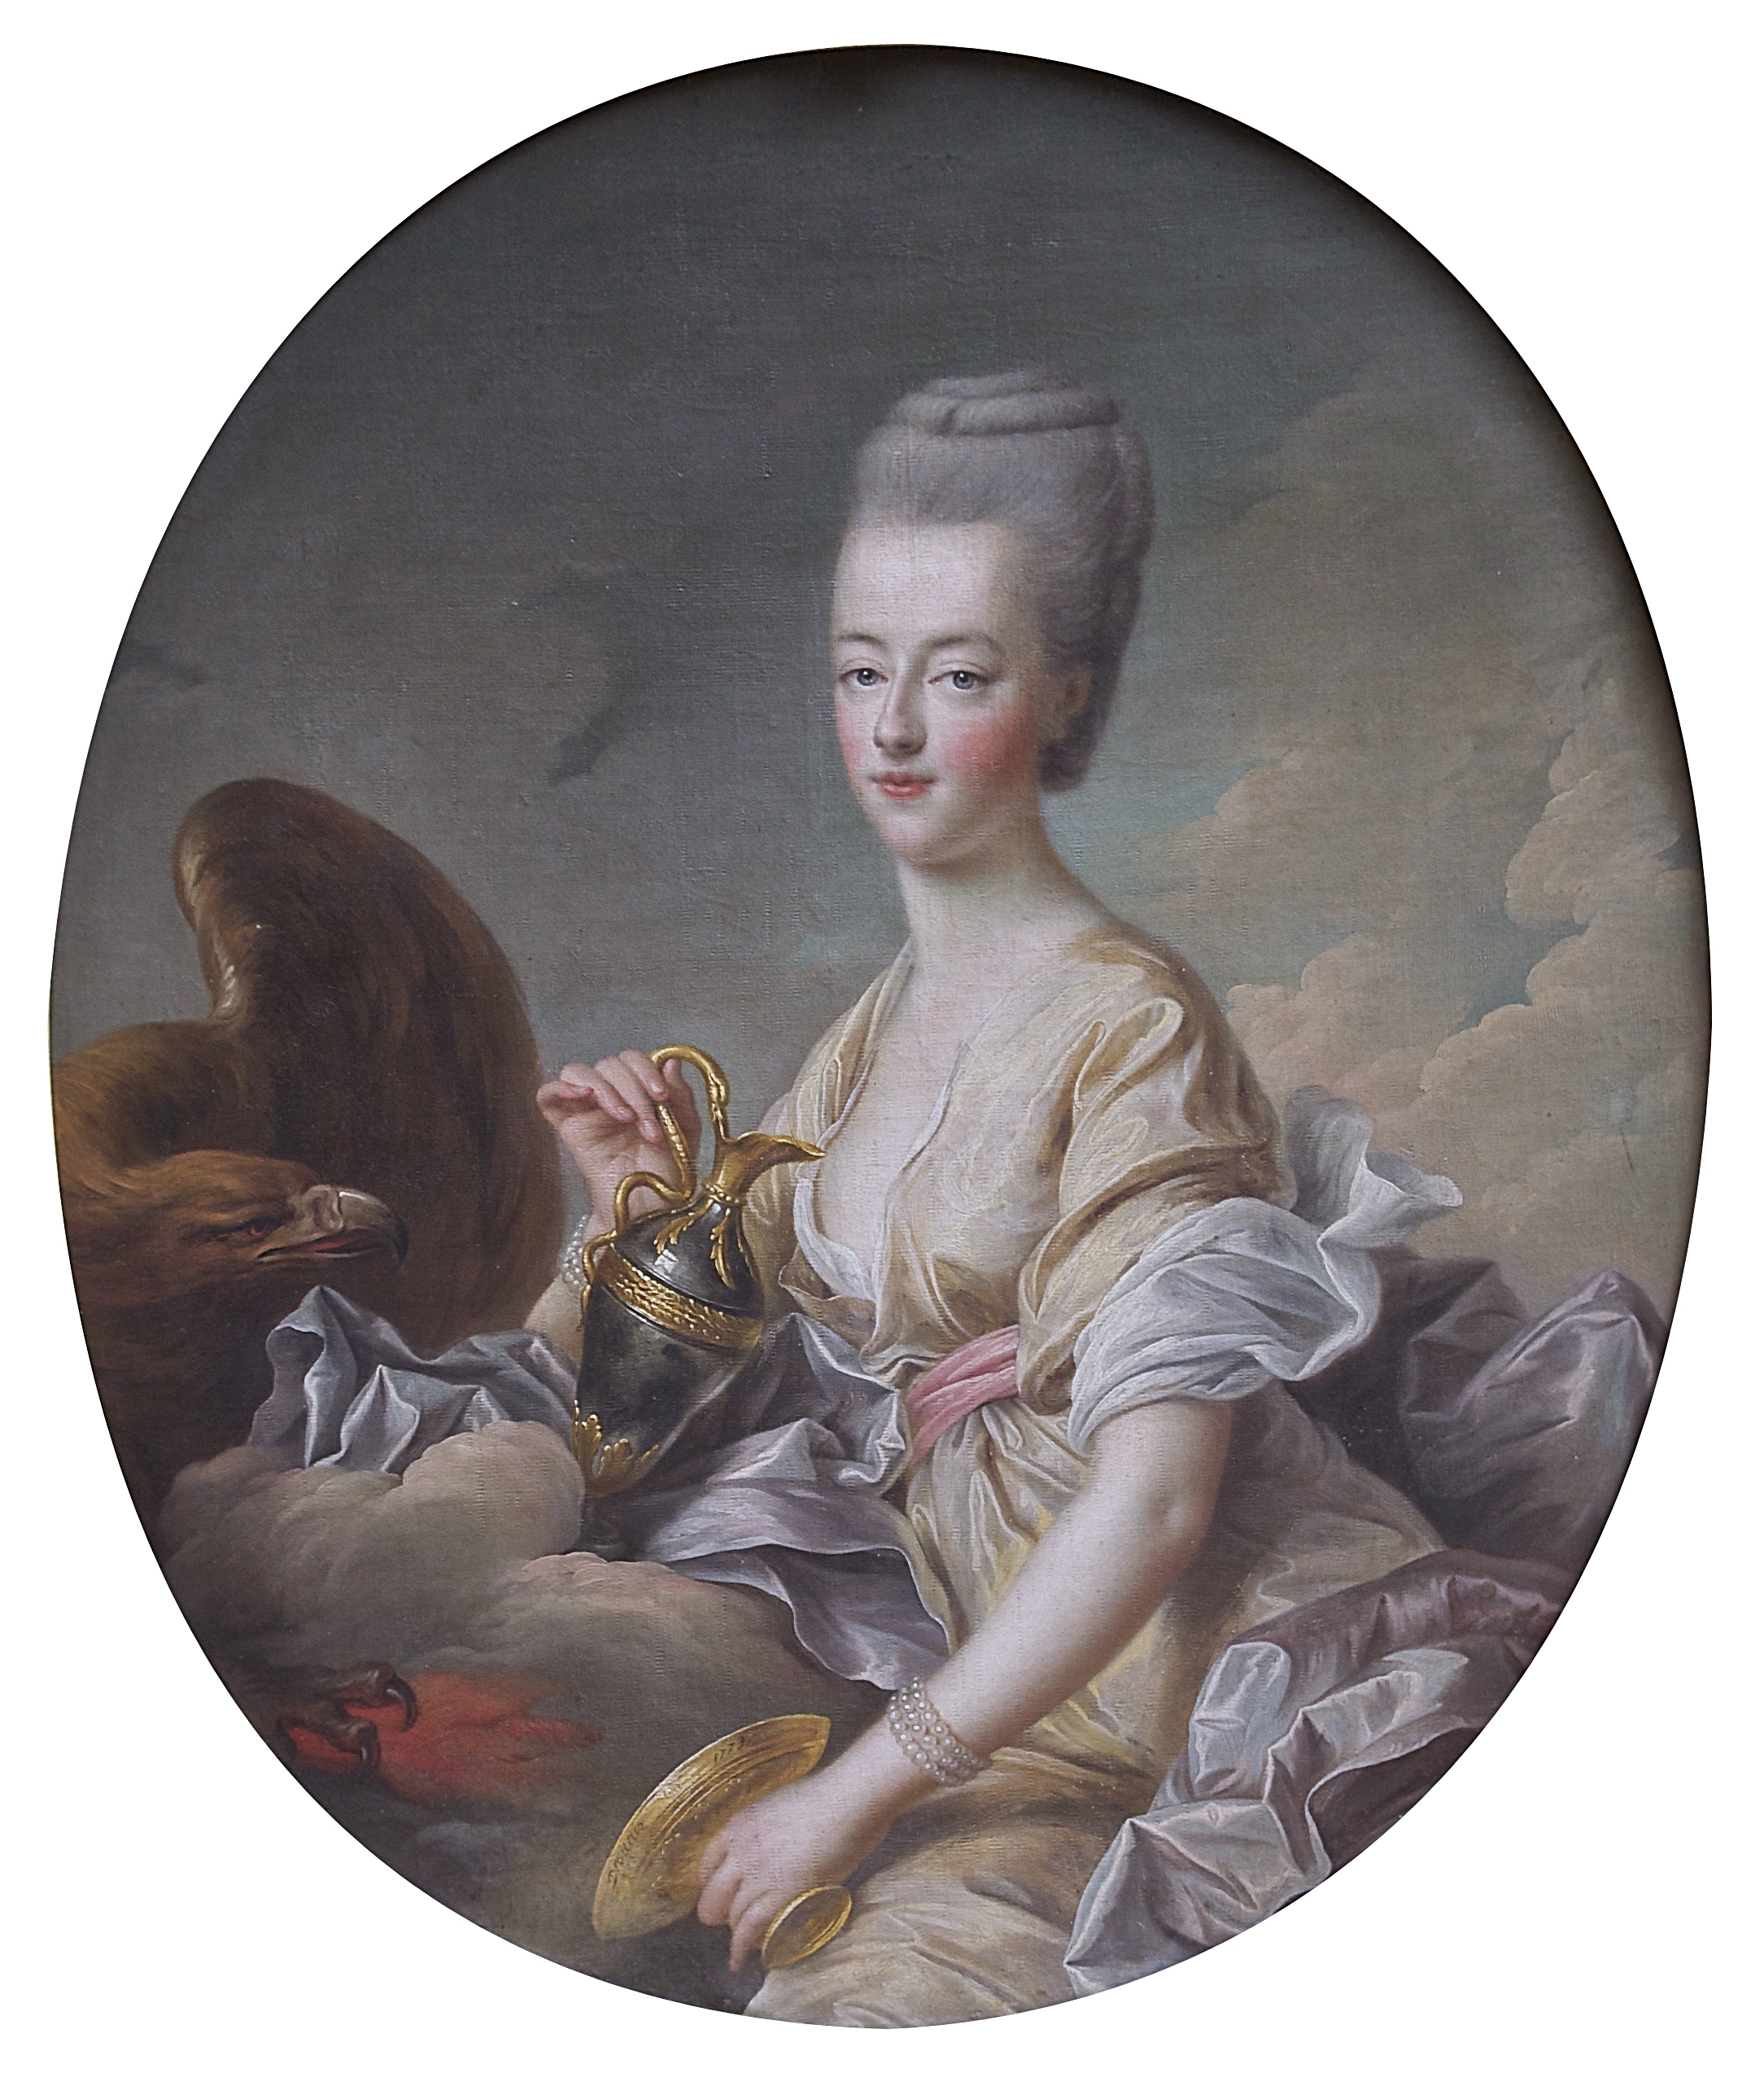 Marie Antoinette dauphine Hébé Drouais Chantilly